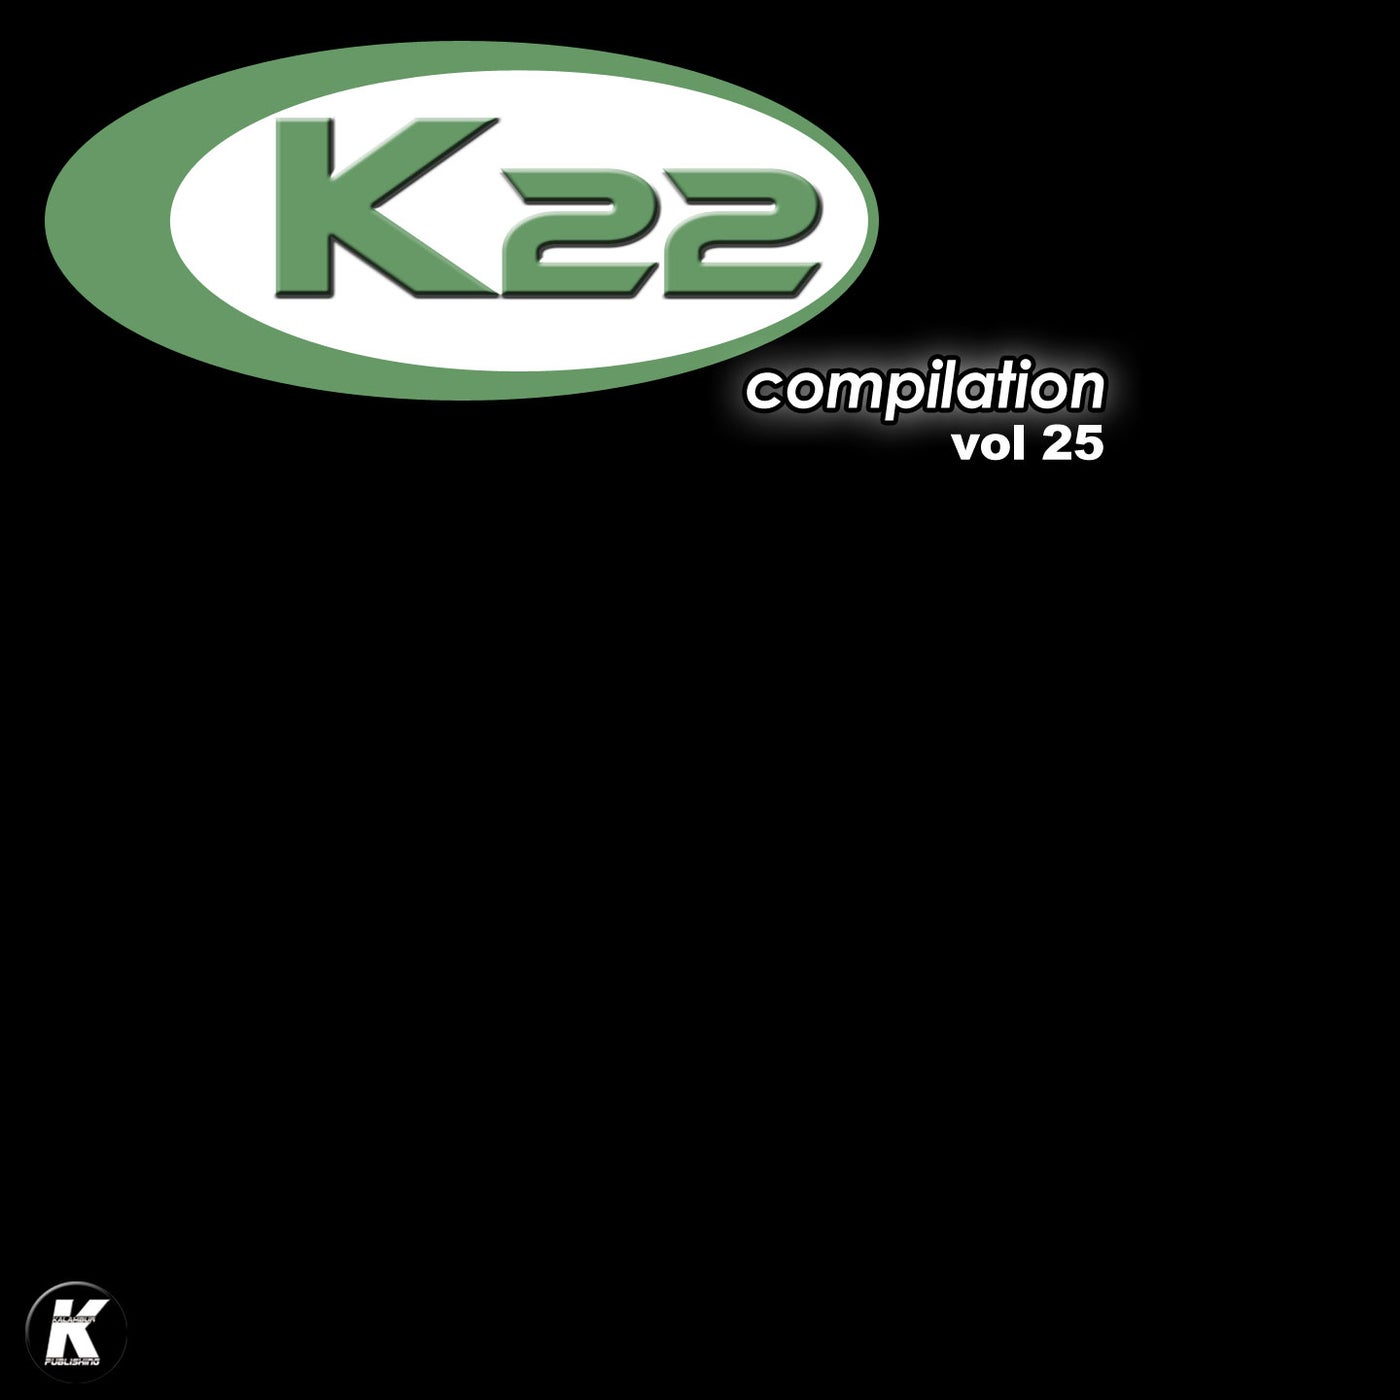 K22 COMPILATION, Vol. 25